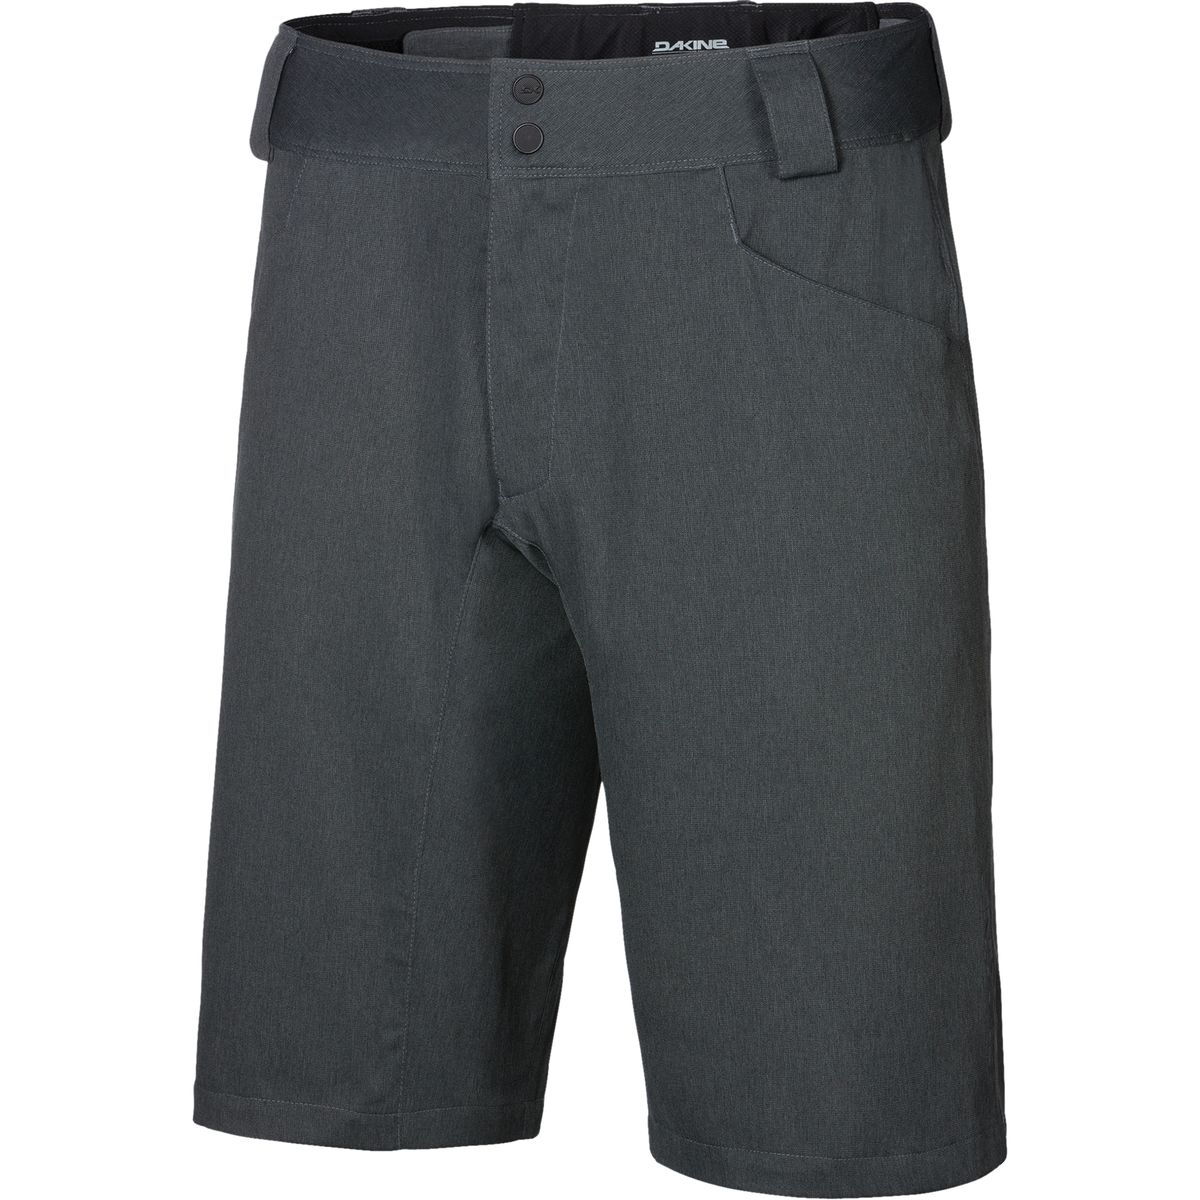 DAKINE Ridge Shorts without Liner Men's